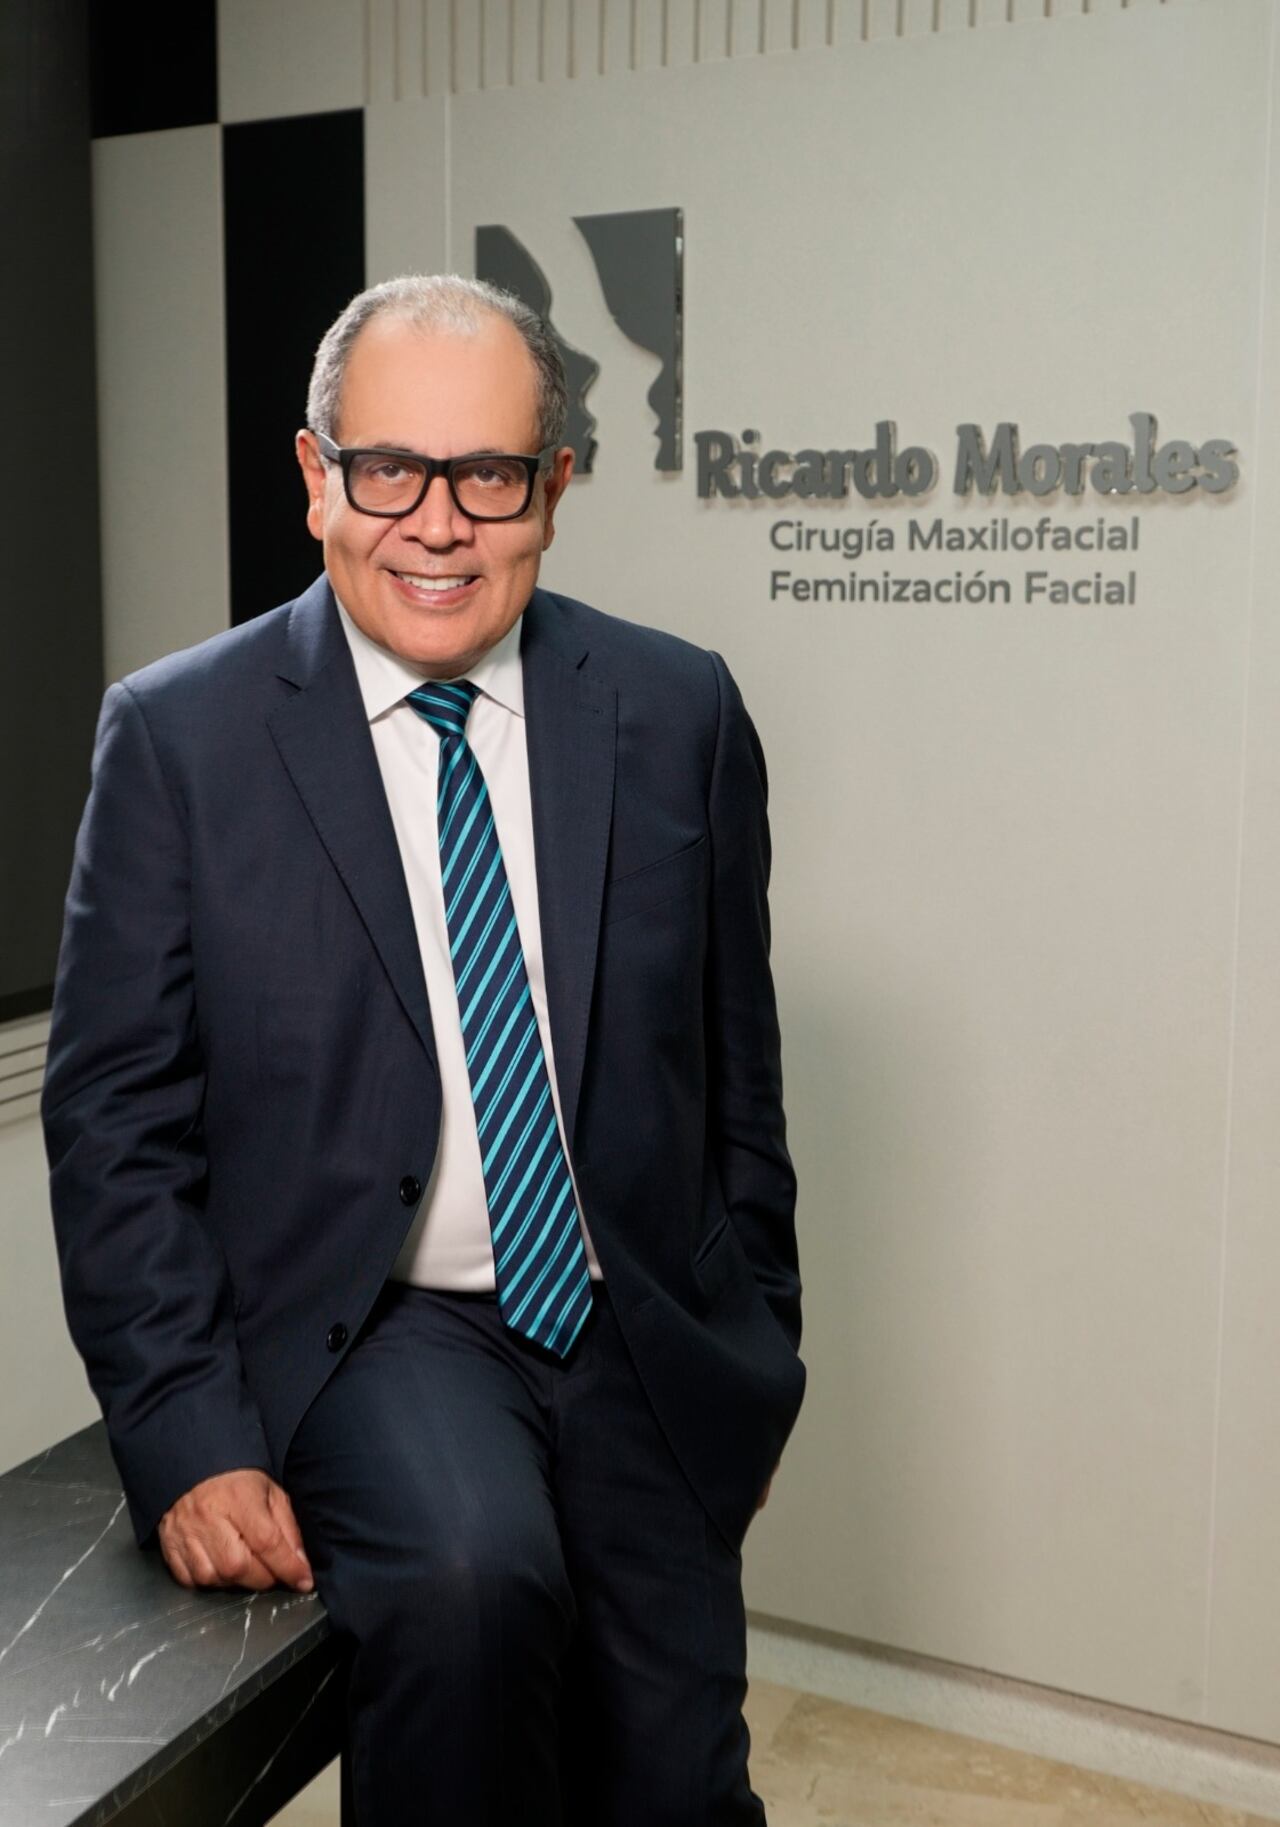 Cirujano maxilofacial, Ricardo Morales.